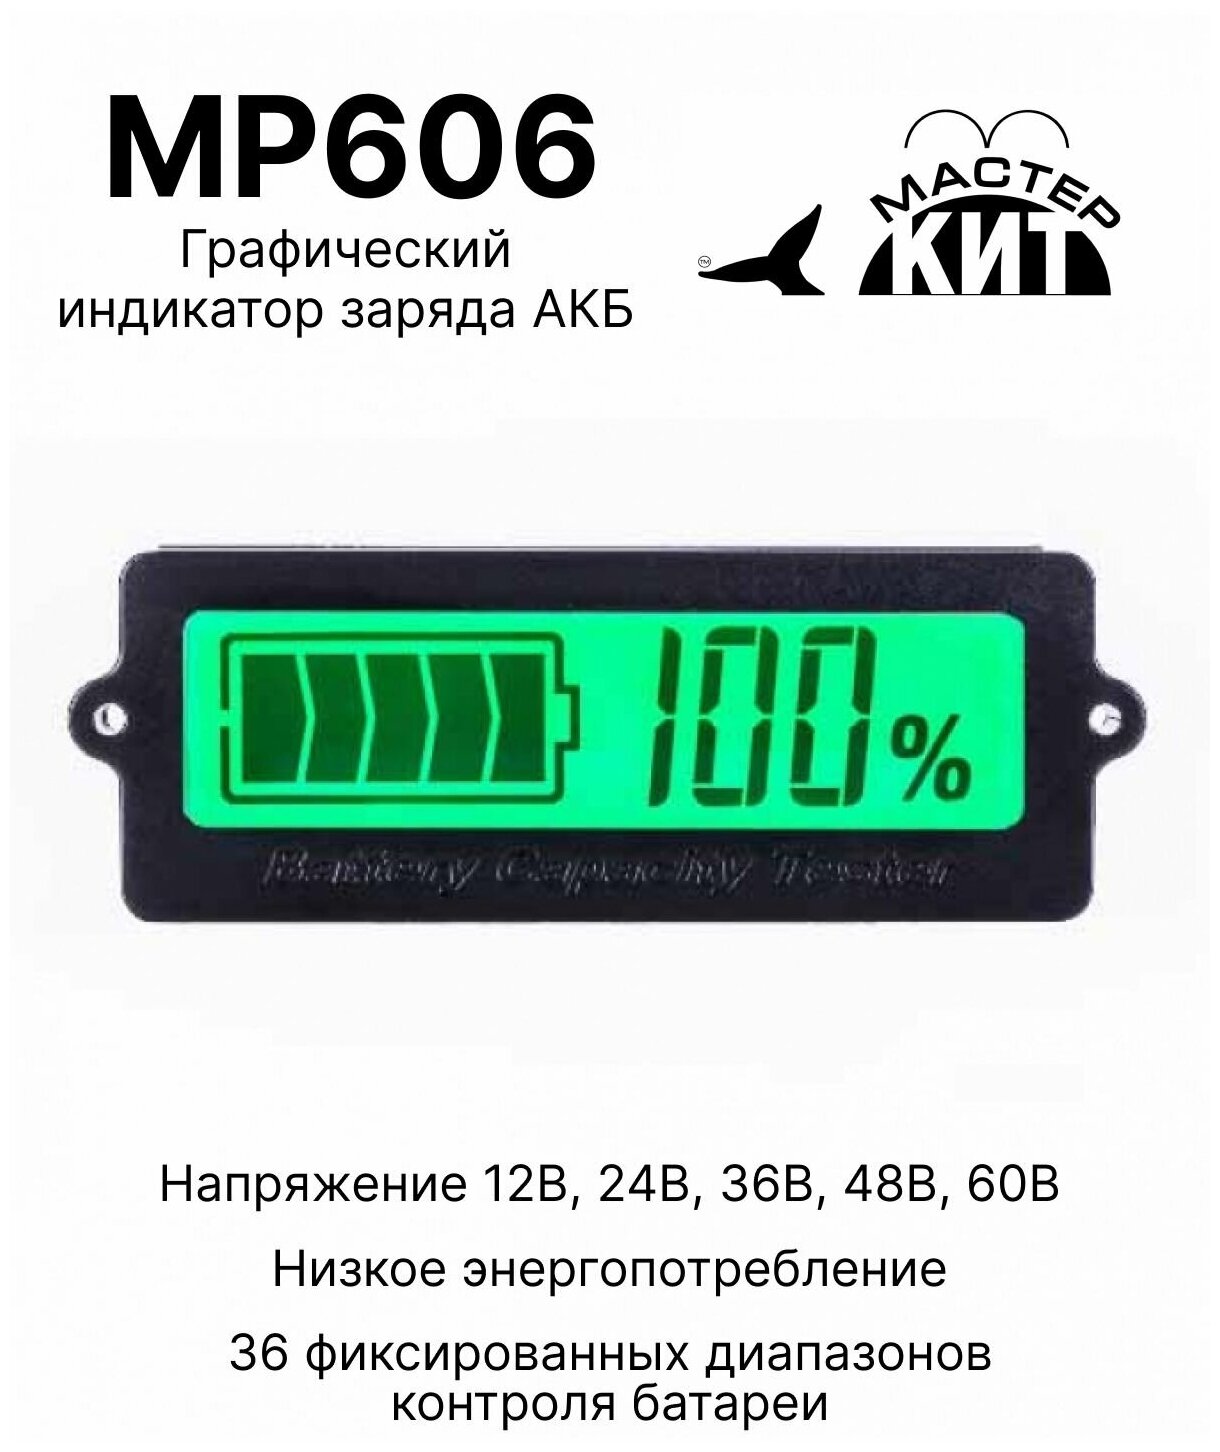 Графический индикатор уровня заряда АКБ автомобильного аккумулятора (12В 24В 36В 48В 60В) MP606 Мастер Кит